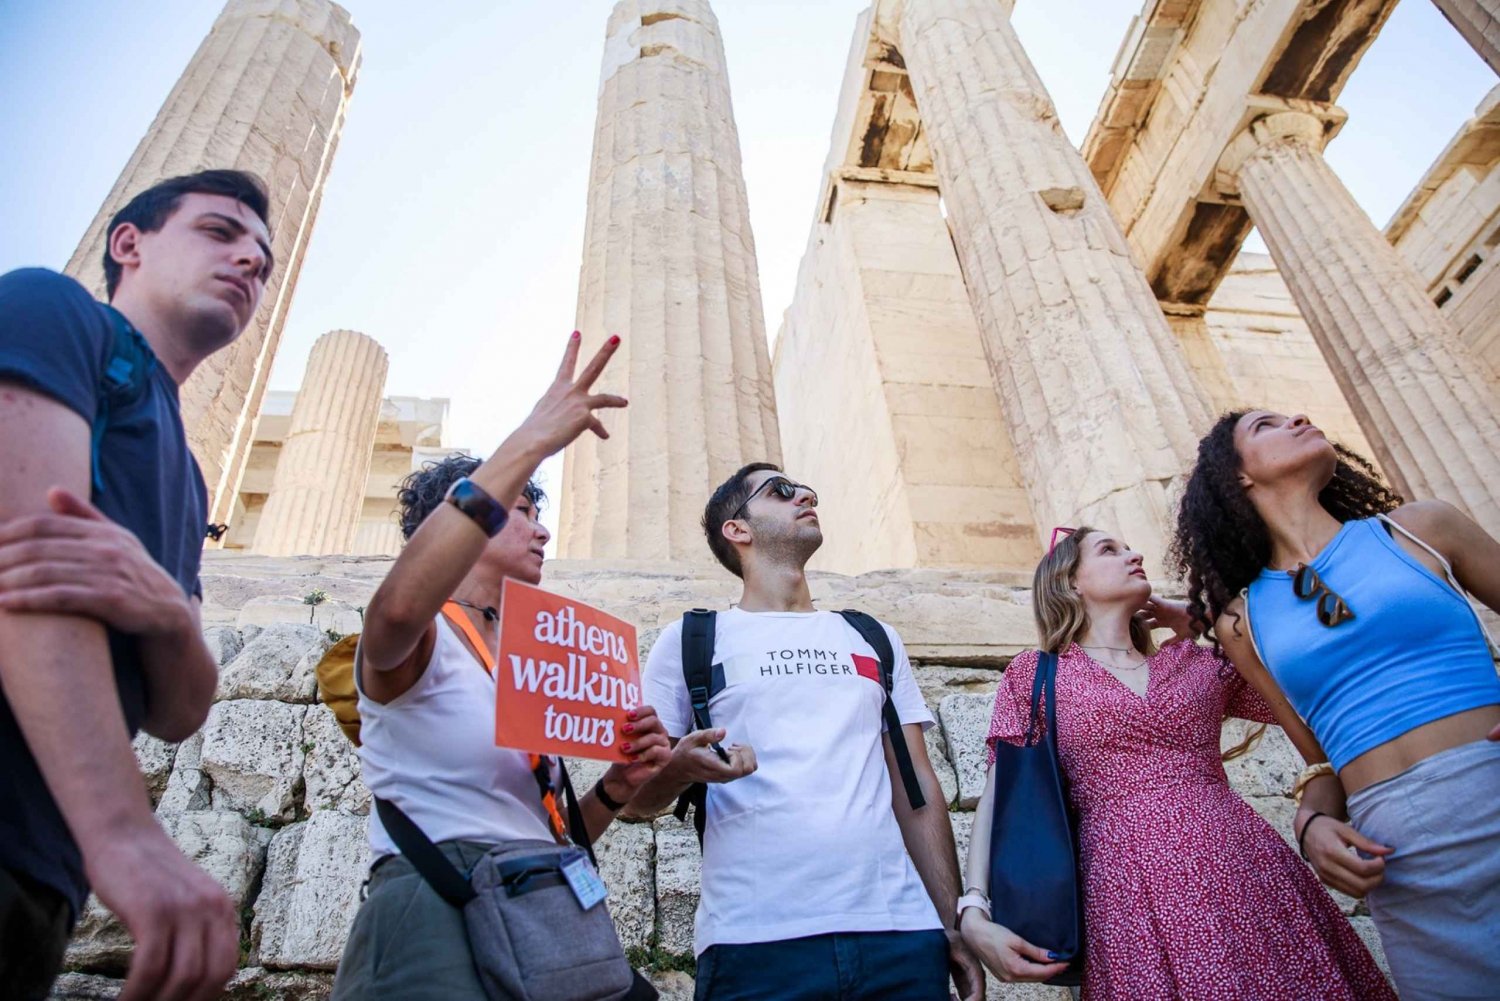 Guidad tur till Akropolis, Plaka och den antika Agora utan biljetter